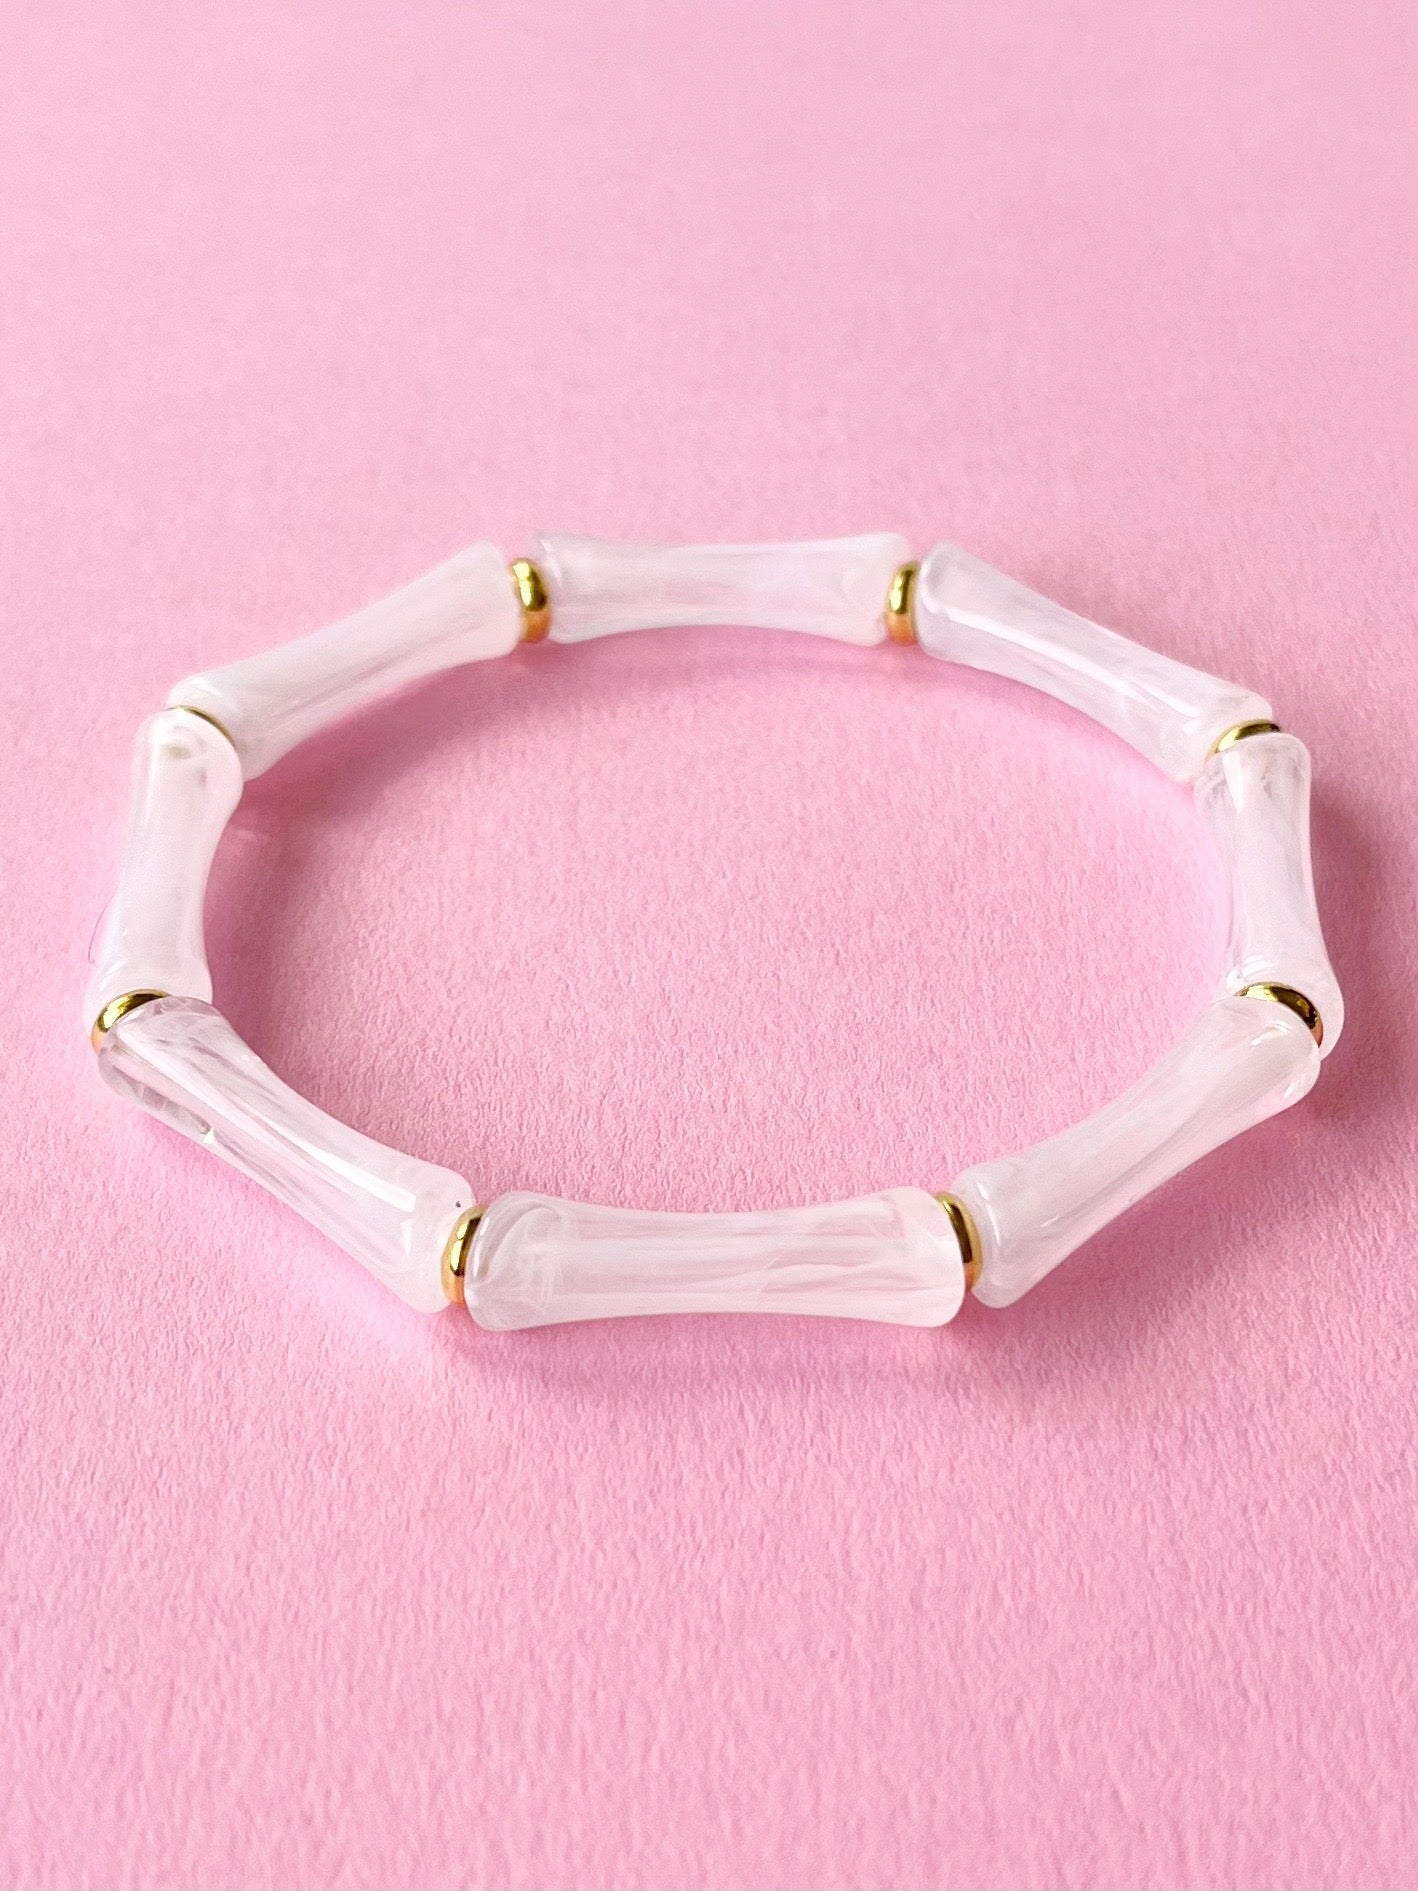 cloudy white acrylic bangle bracelet